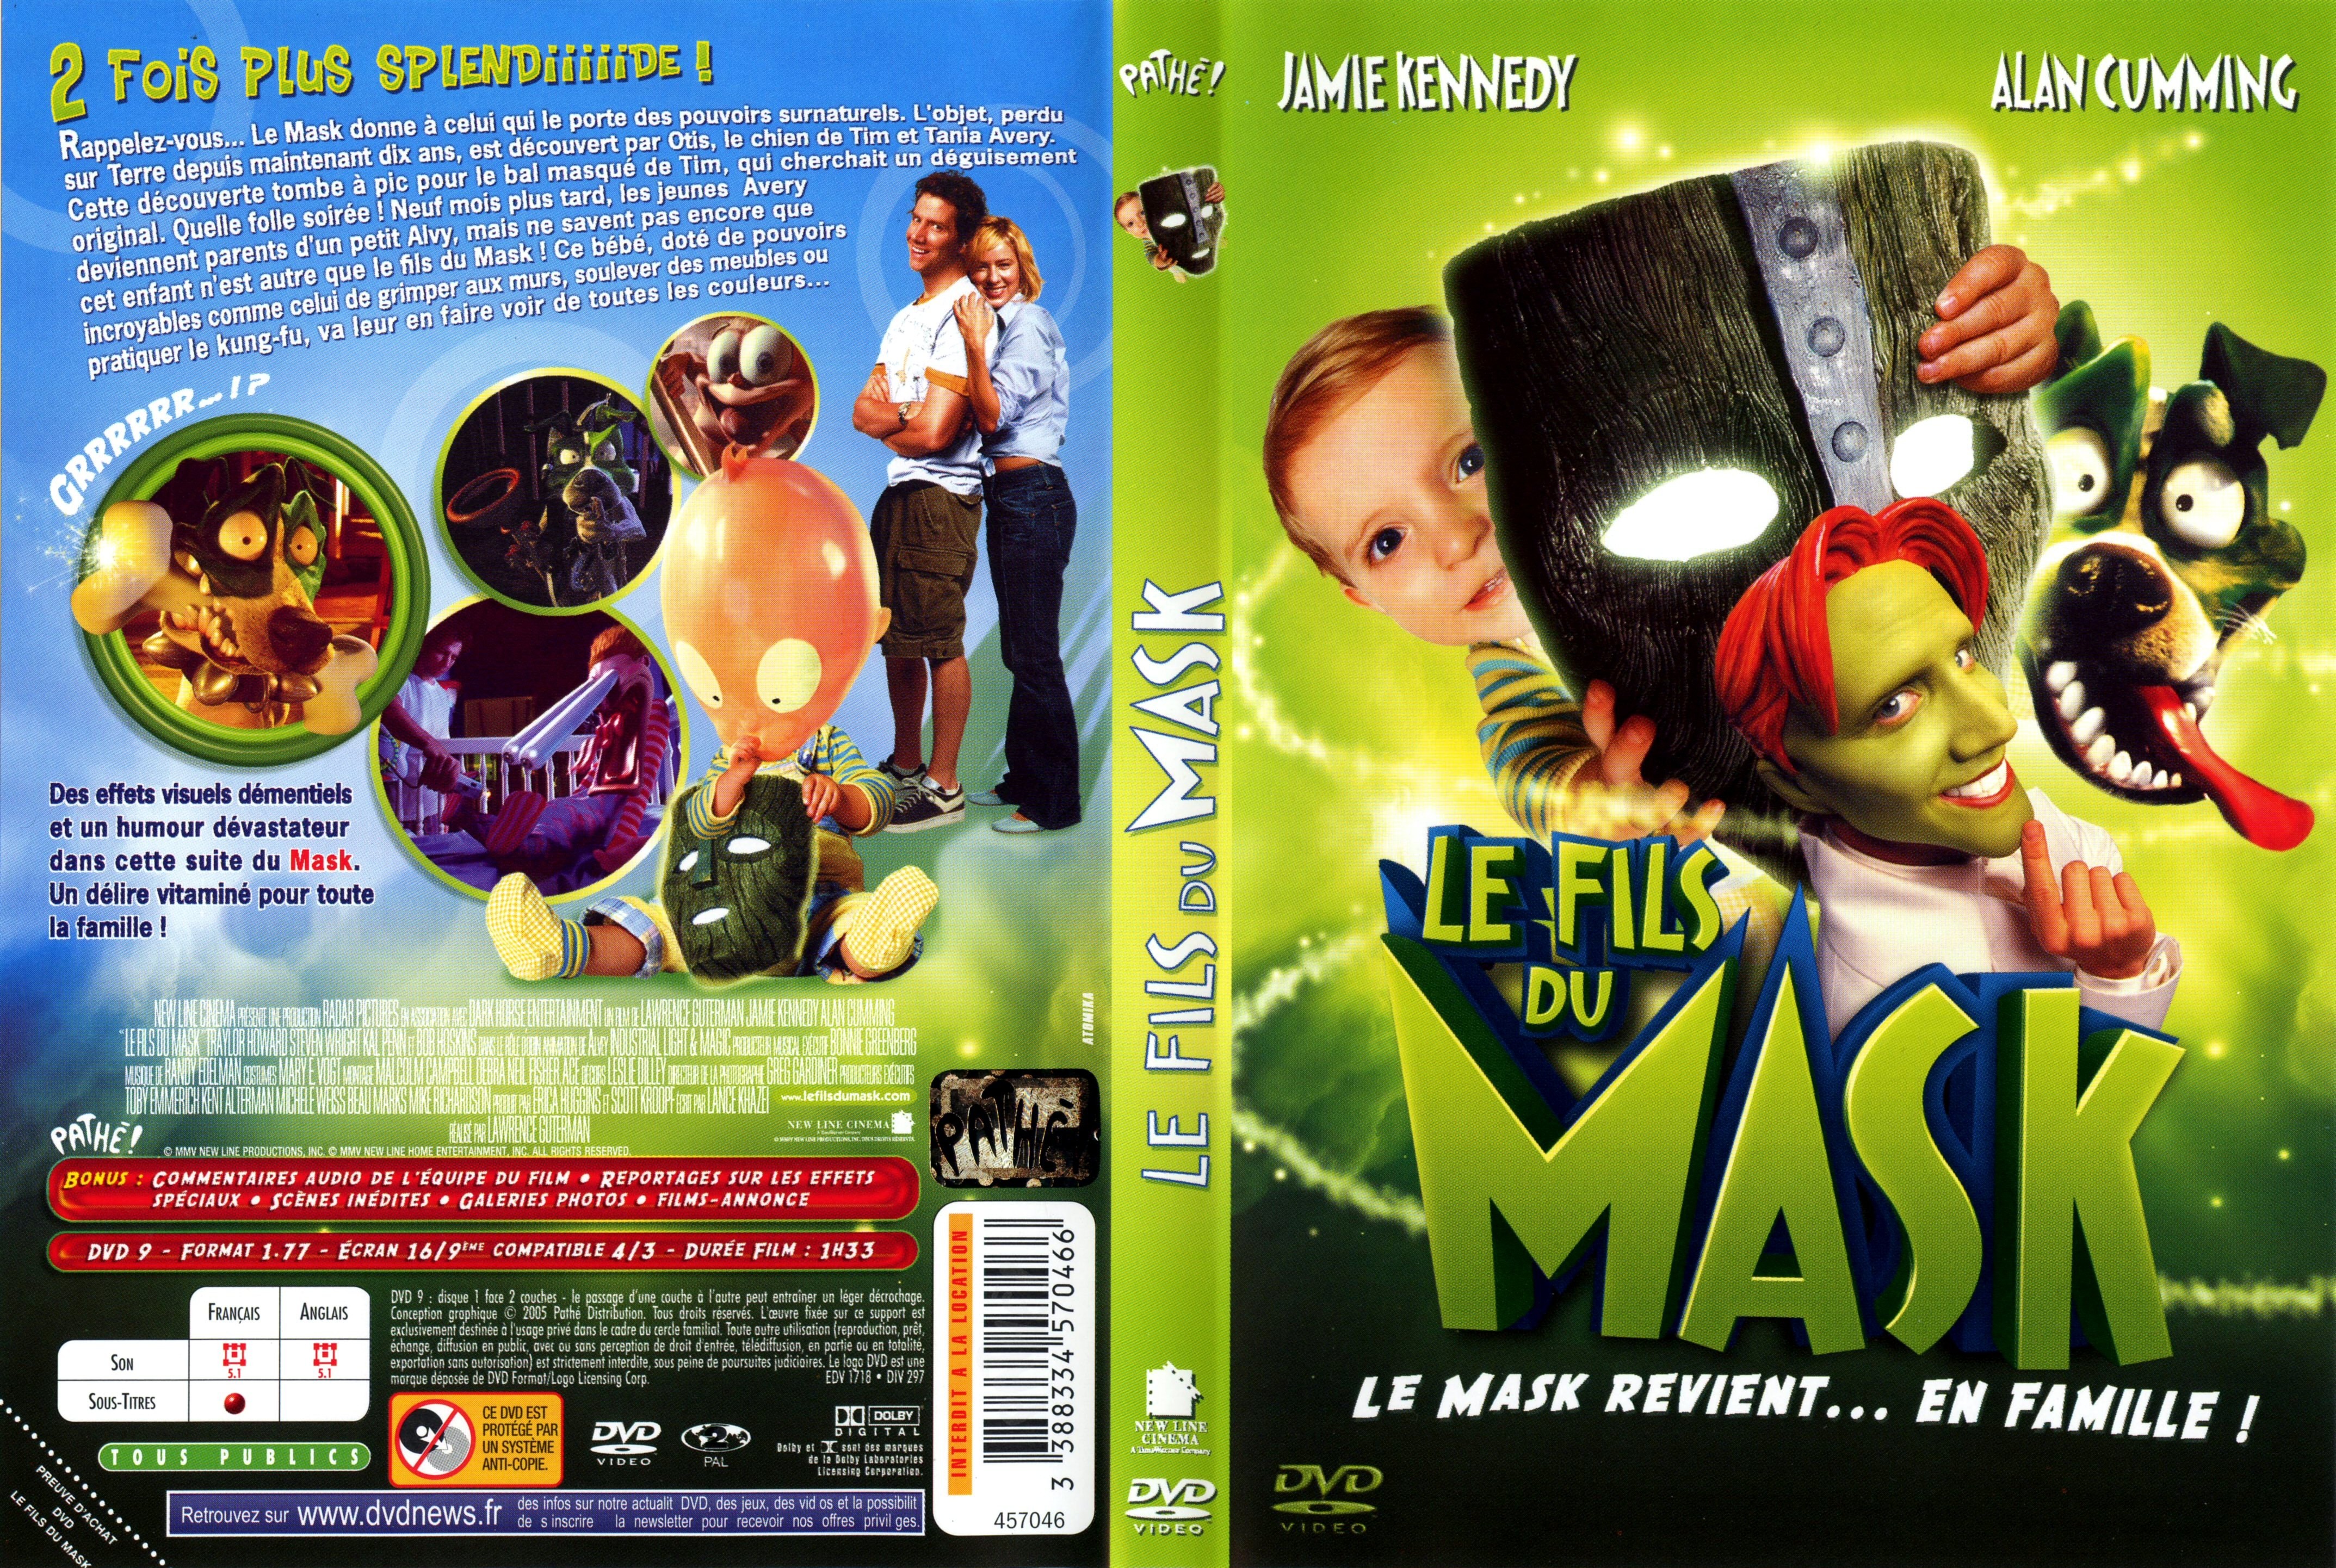 Jaquette DVD Le fils du mask